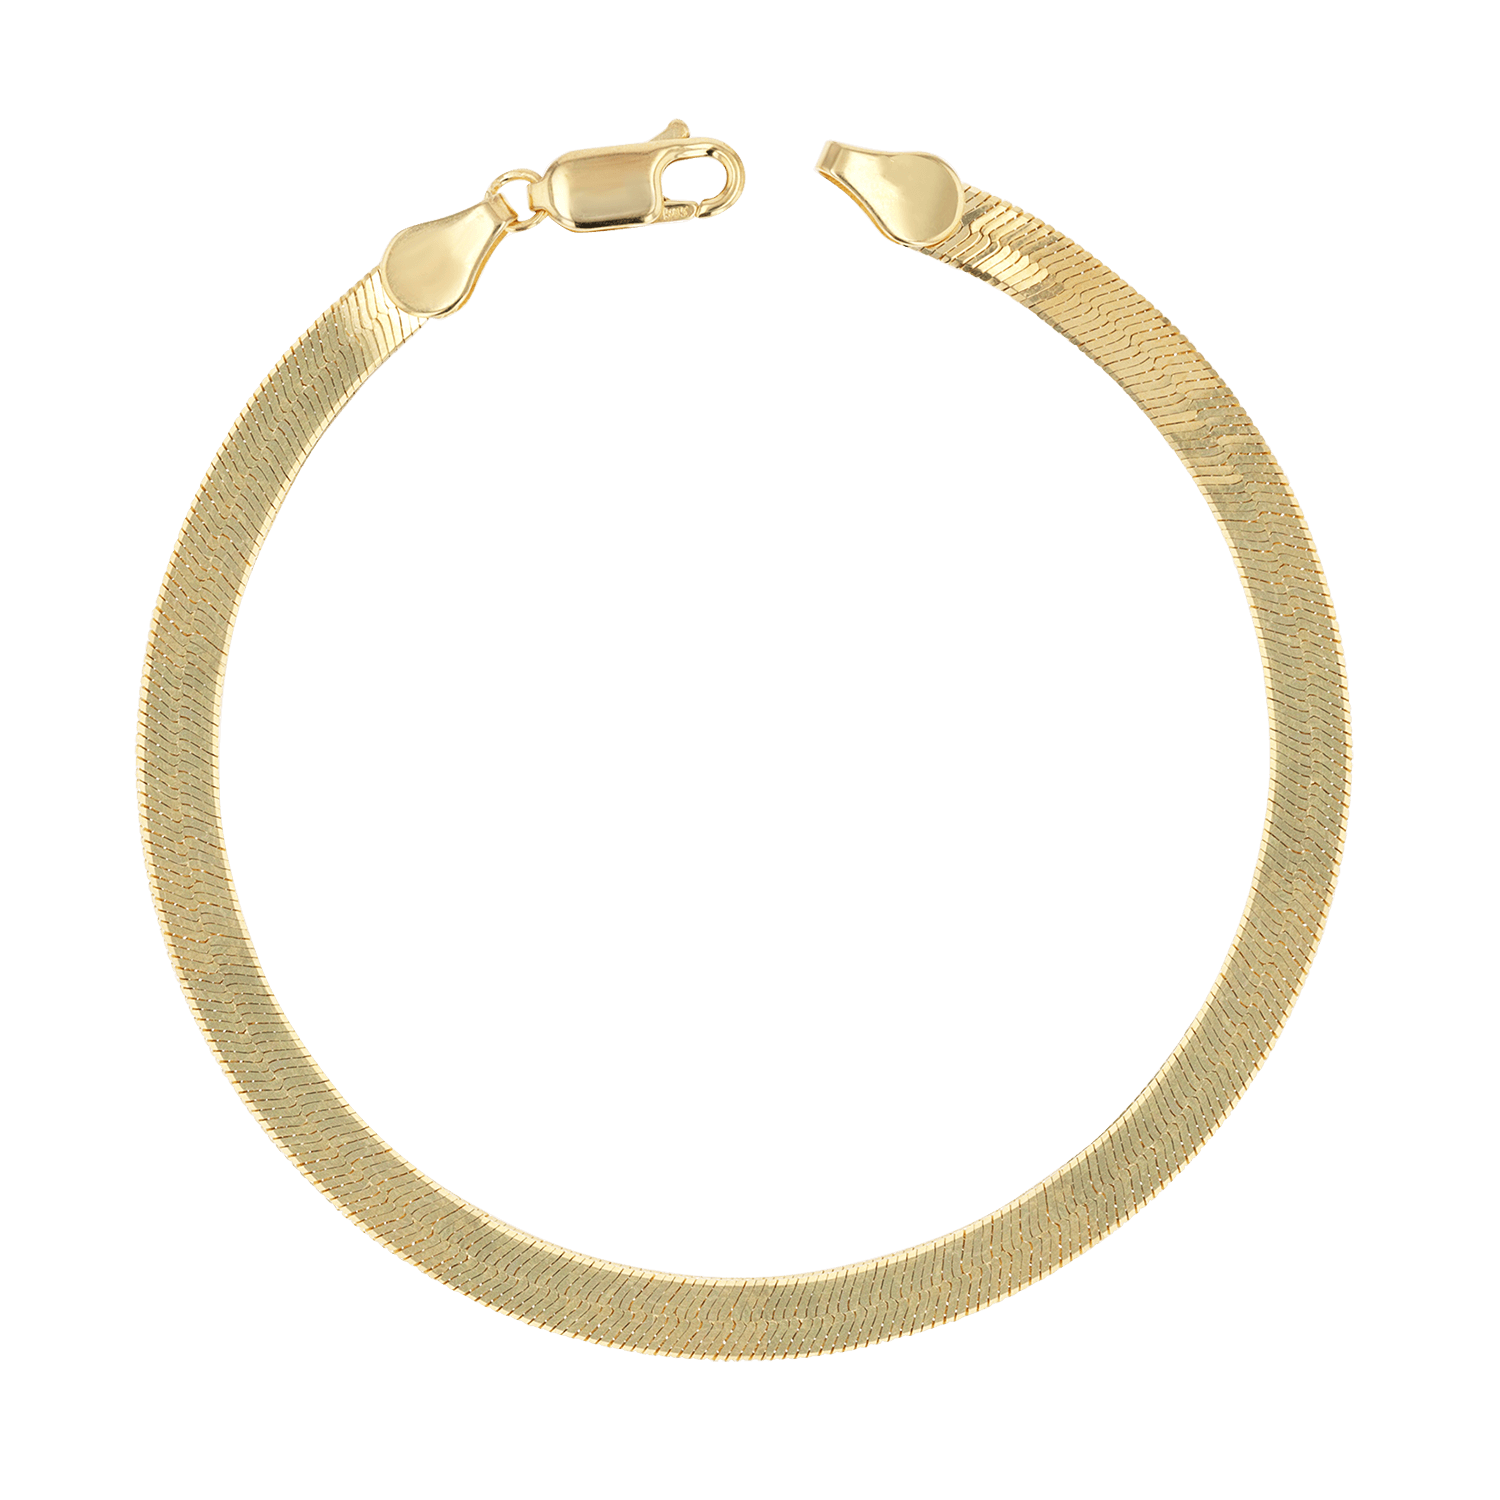 14K Gold Cuban Link Bracelet, 8.75